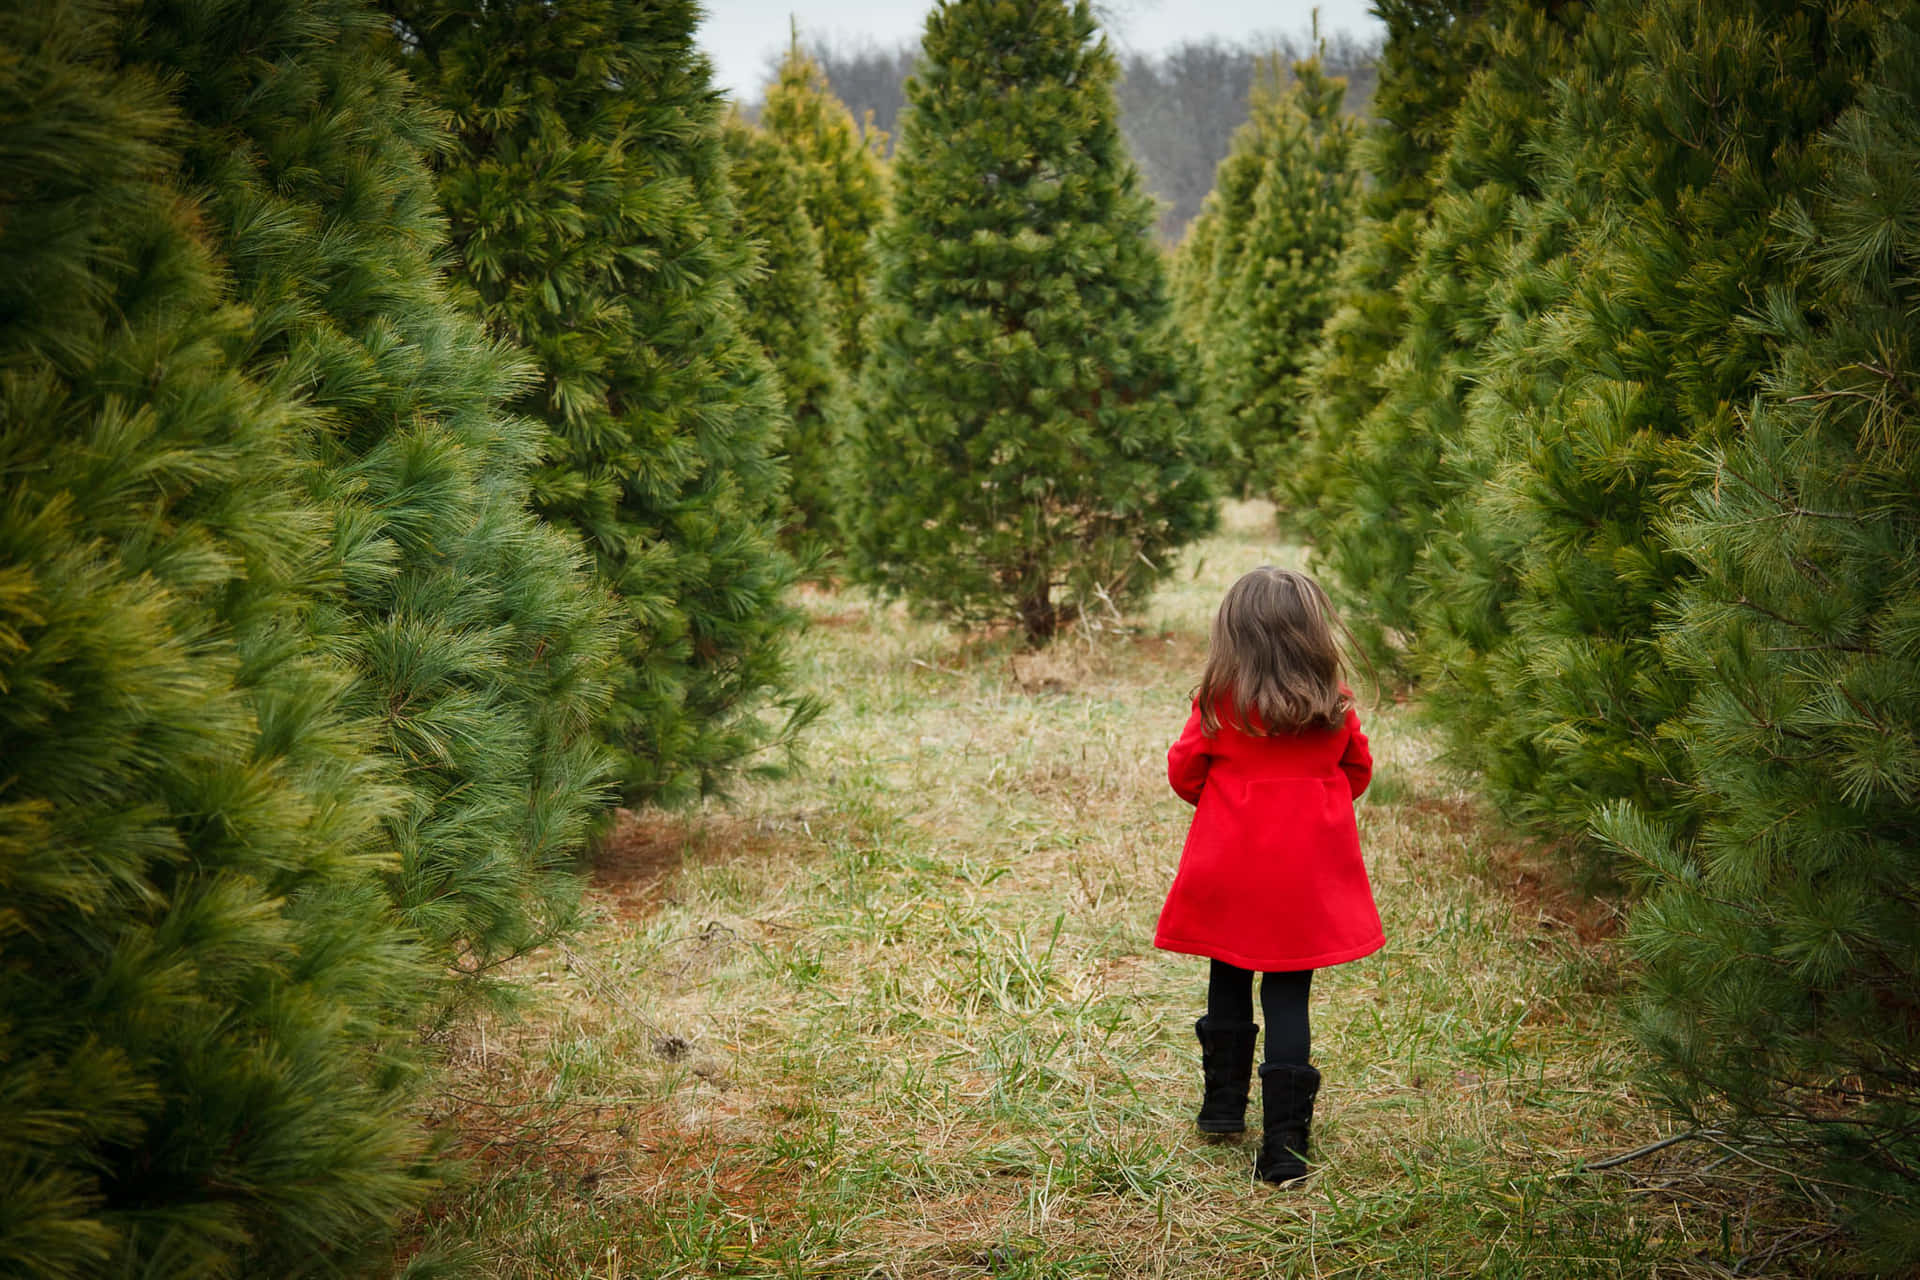 Imagende Un Niño Caminando En Una Plantación De Árboles De Navidad